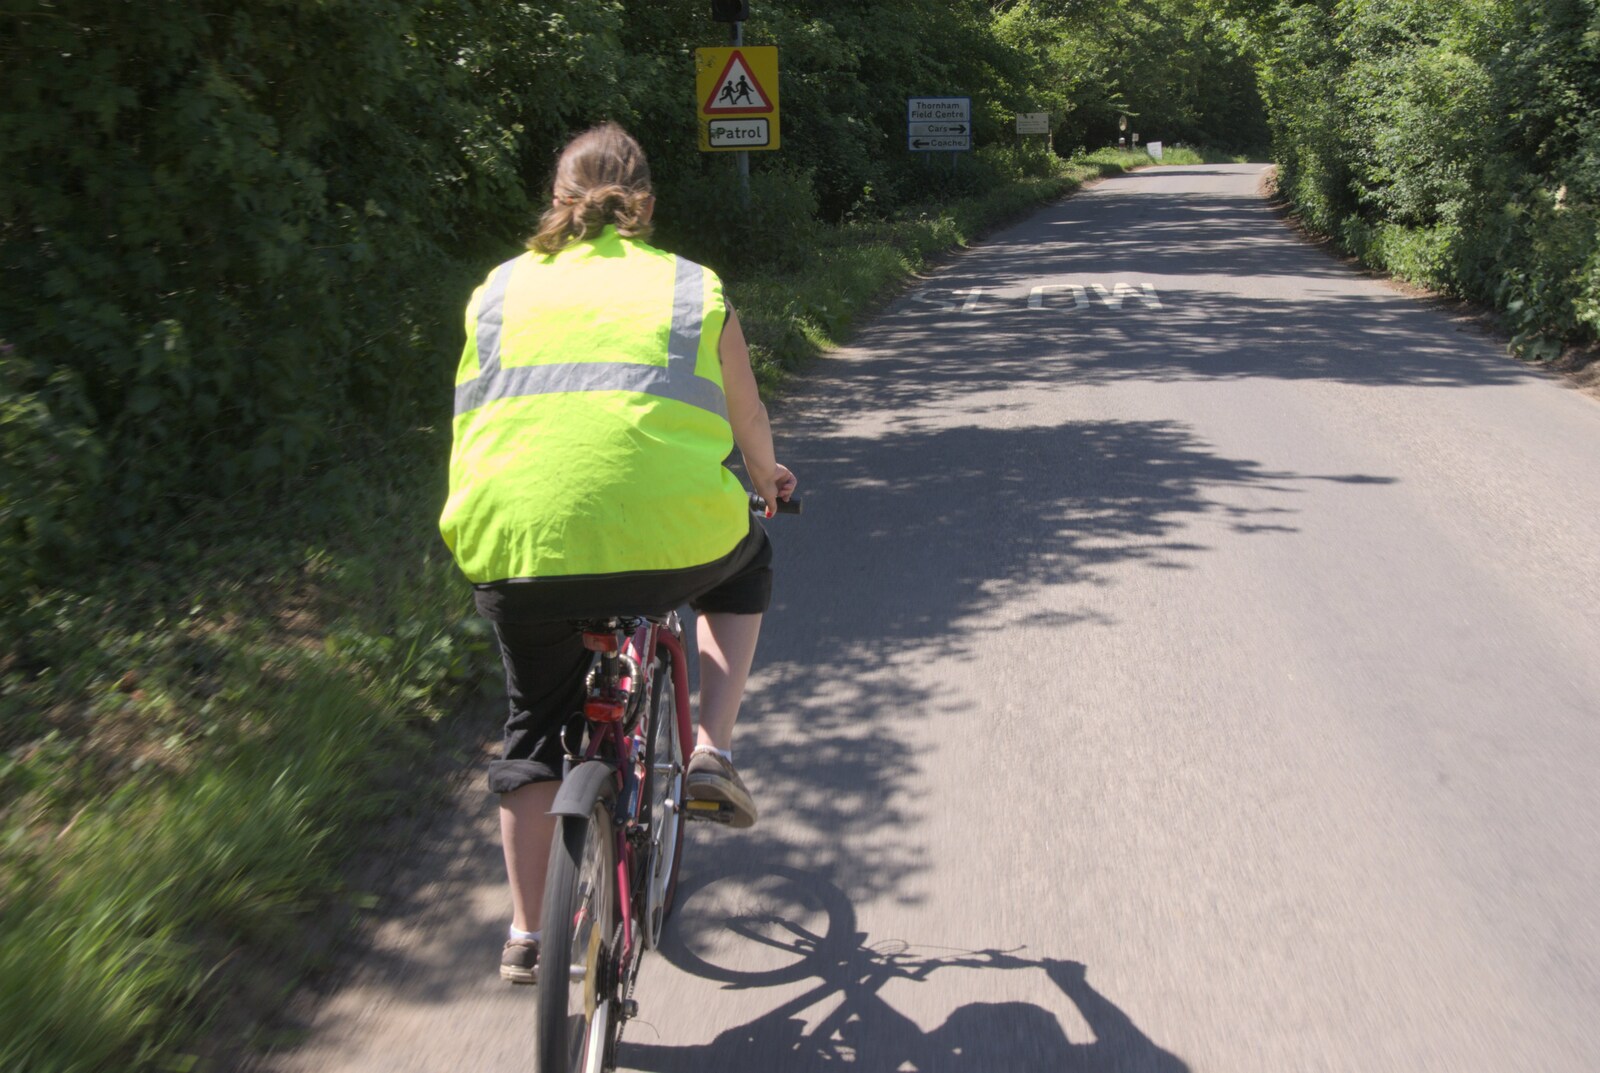 Isobel on the road to Thornham Walks from Summer Bike Rides, Thornham Magna, Suffolk - 1st June 2009